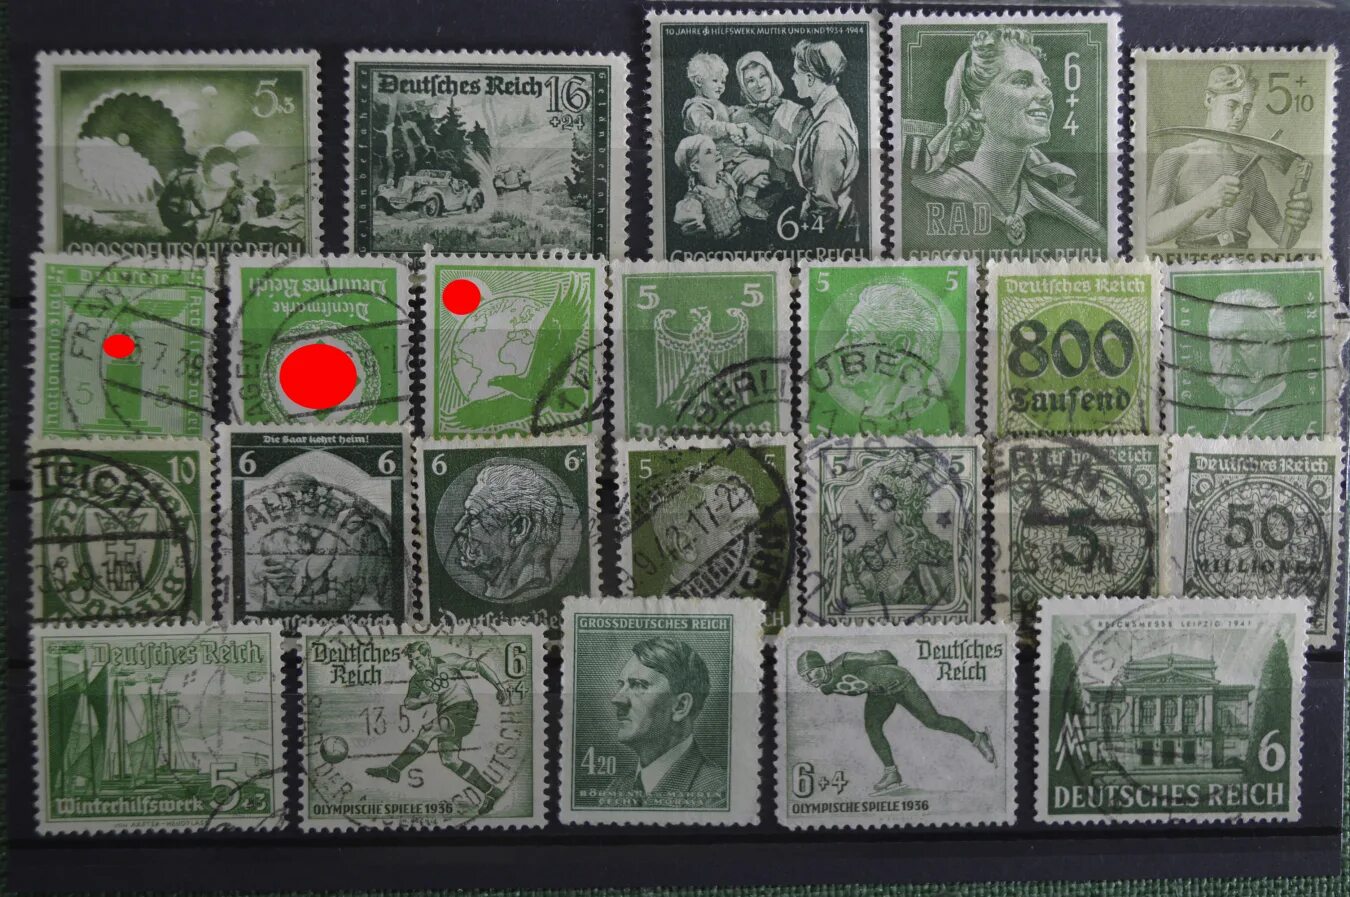 Почтовые немецкие марки с изображением Гитлера 1939 года. Кляссер для немецких почтовых марок. Почтовые марки рейха с сельским хозяйством. Марки Почтовая немецкая 1937.